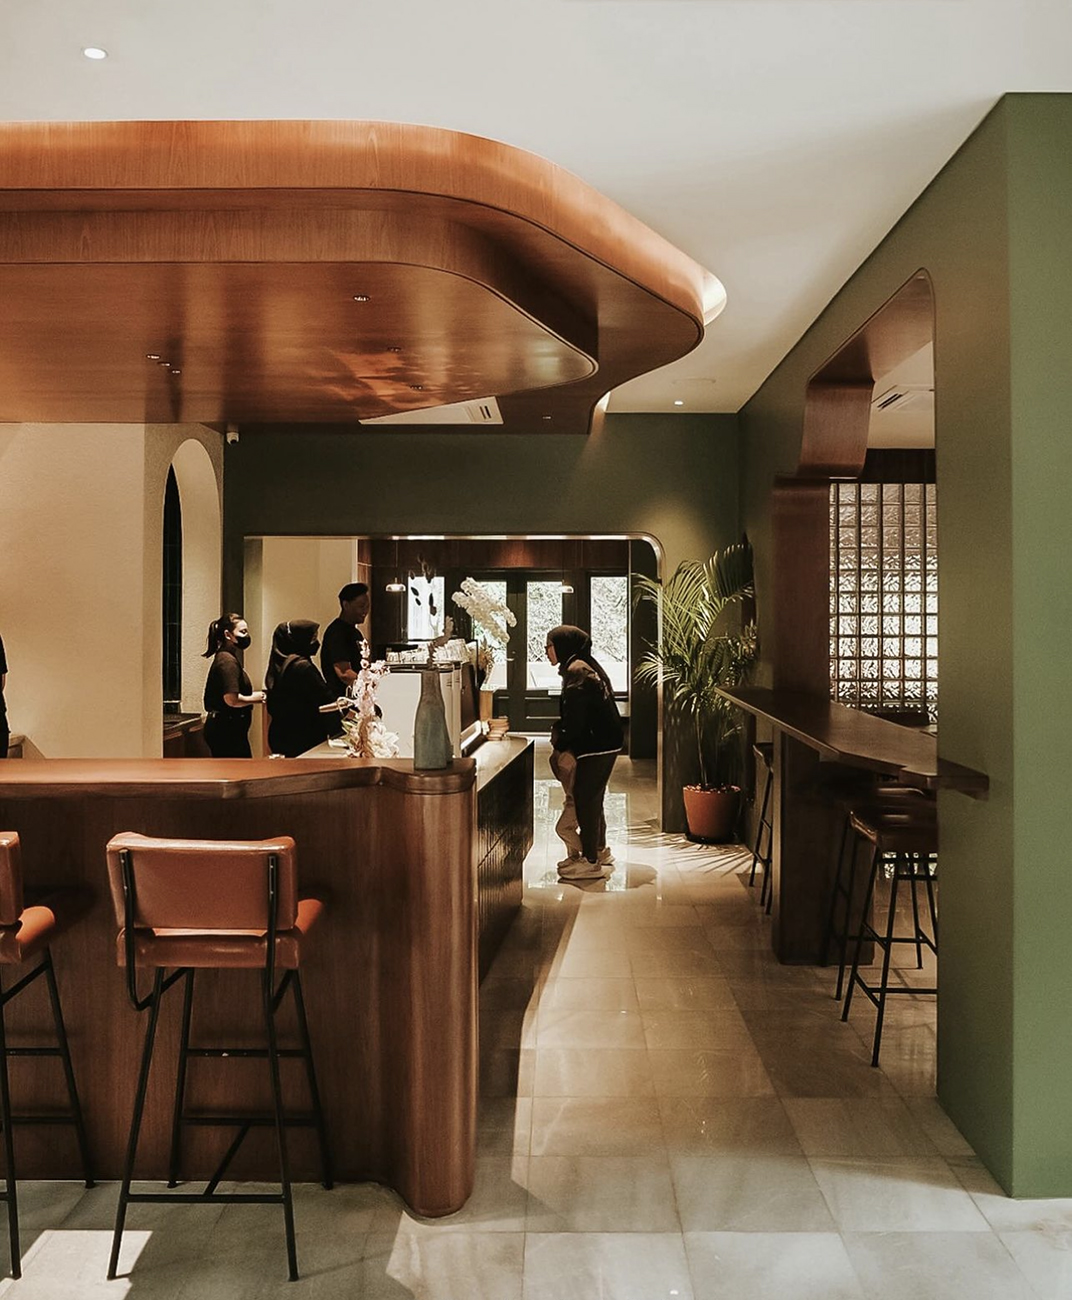 美学咖啡店secondfloorcoffee 巴厘岛 深圳 上海 北京 广州 武汉 咖啡店 餐饮商业 logo设计 vi设计 空间设计